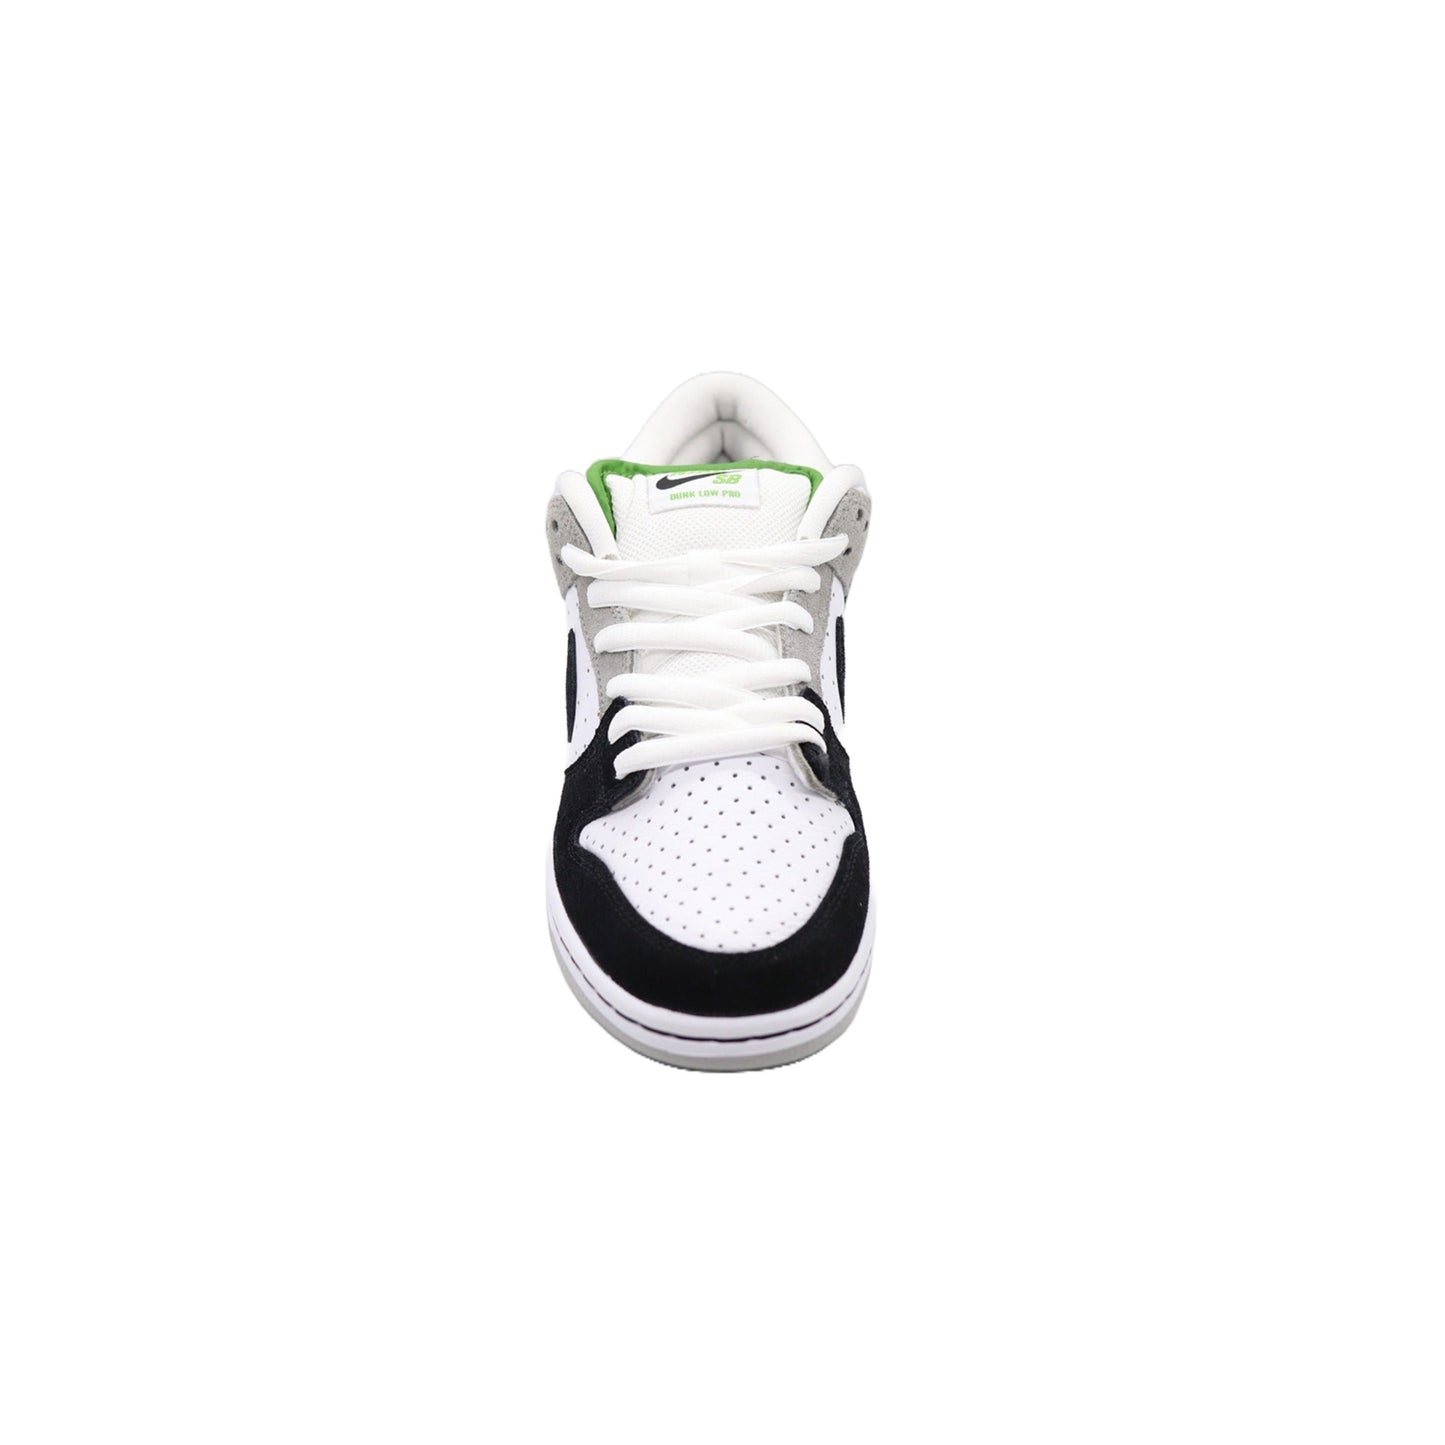 Nike SB Dunk Low, Chlorophyll